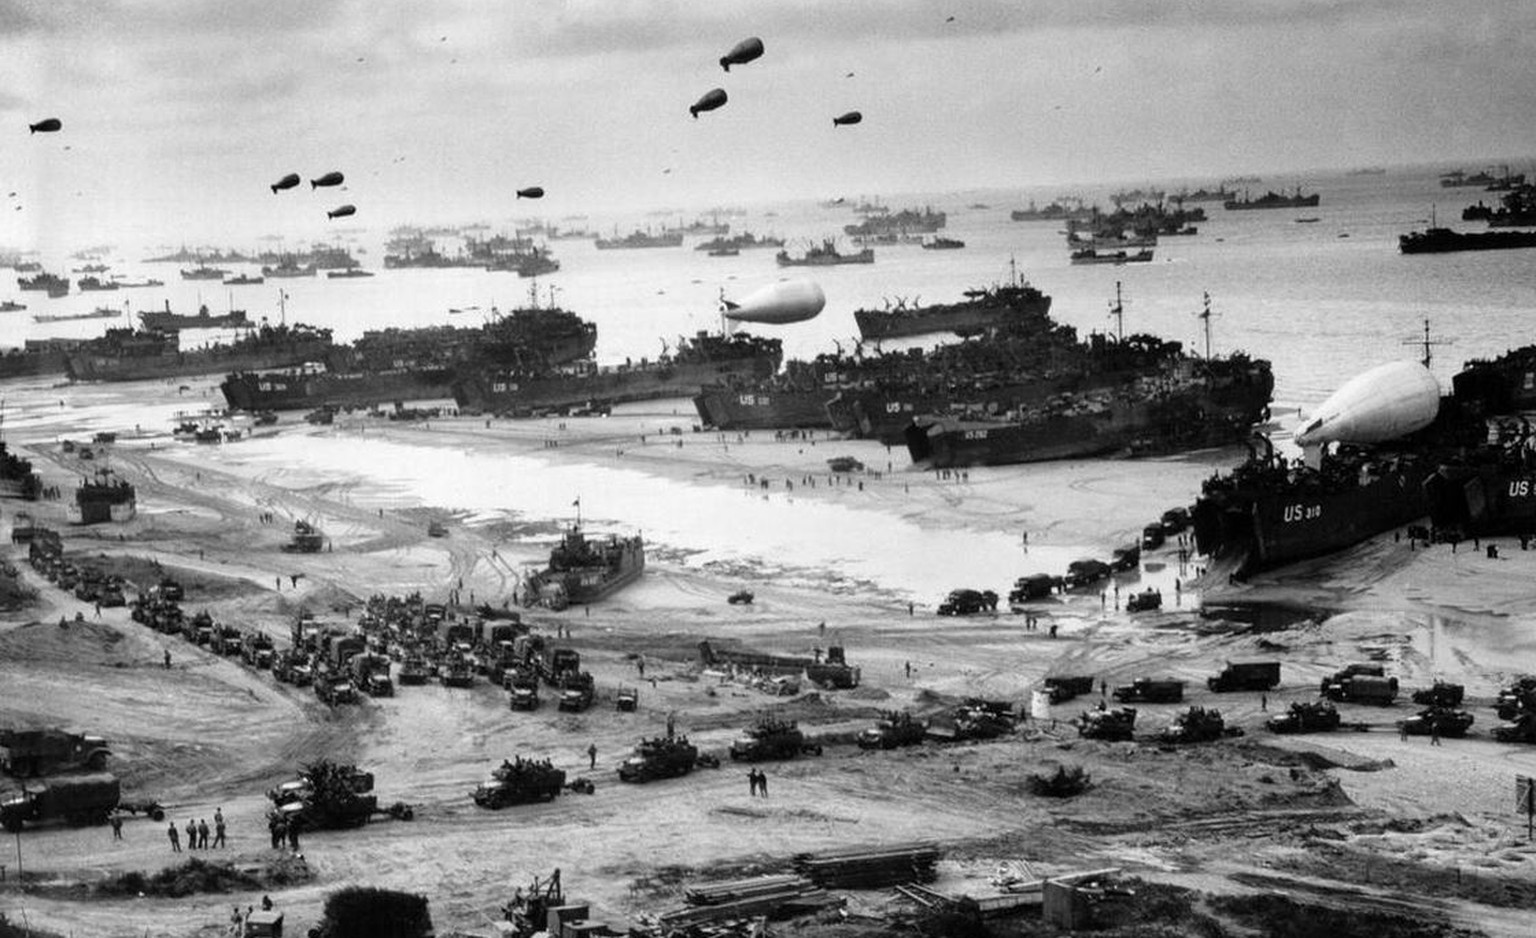 Aufnahmen wie diese von der Landung der Alliierten im Zweiten Weltkrieg gibt es auf dem Twitter-Kanal ClassicPics zu sehen.